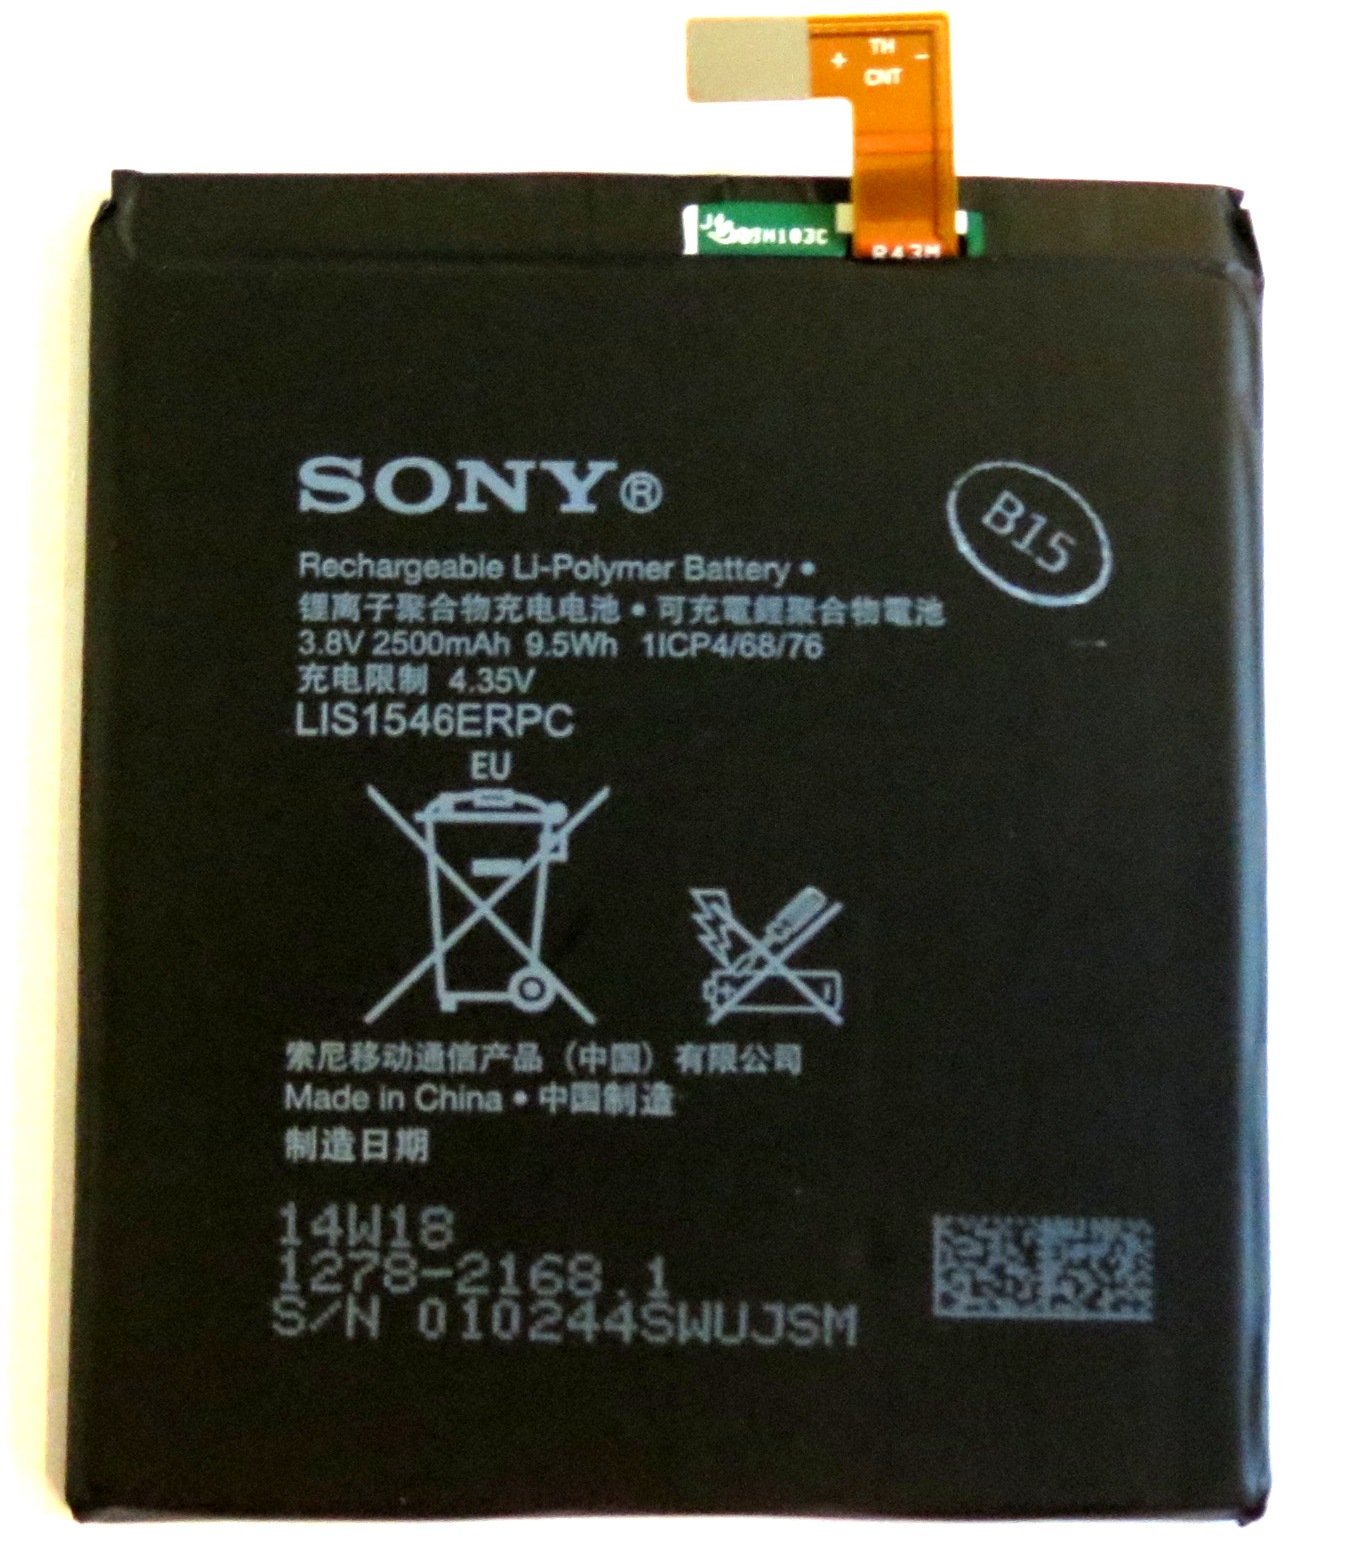 Baterie pro mobilní telefon Sony 1278-2168 2500mAh Li-Pol